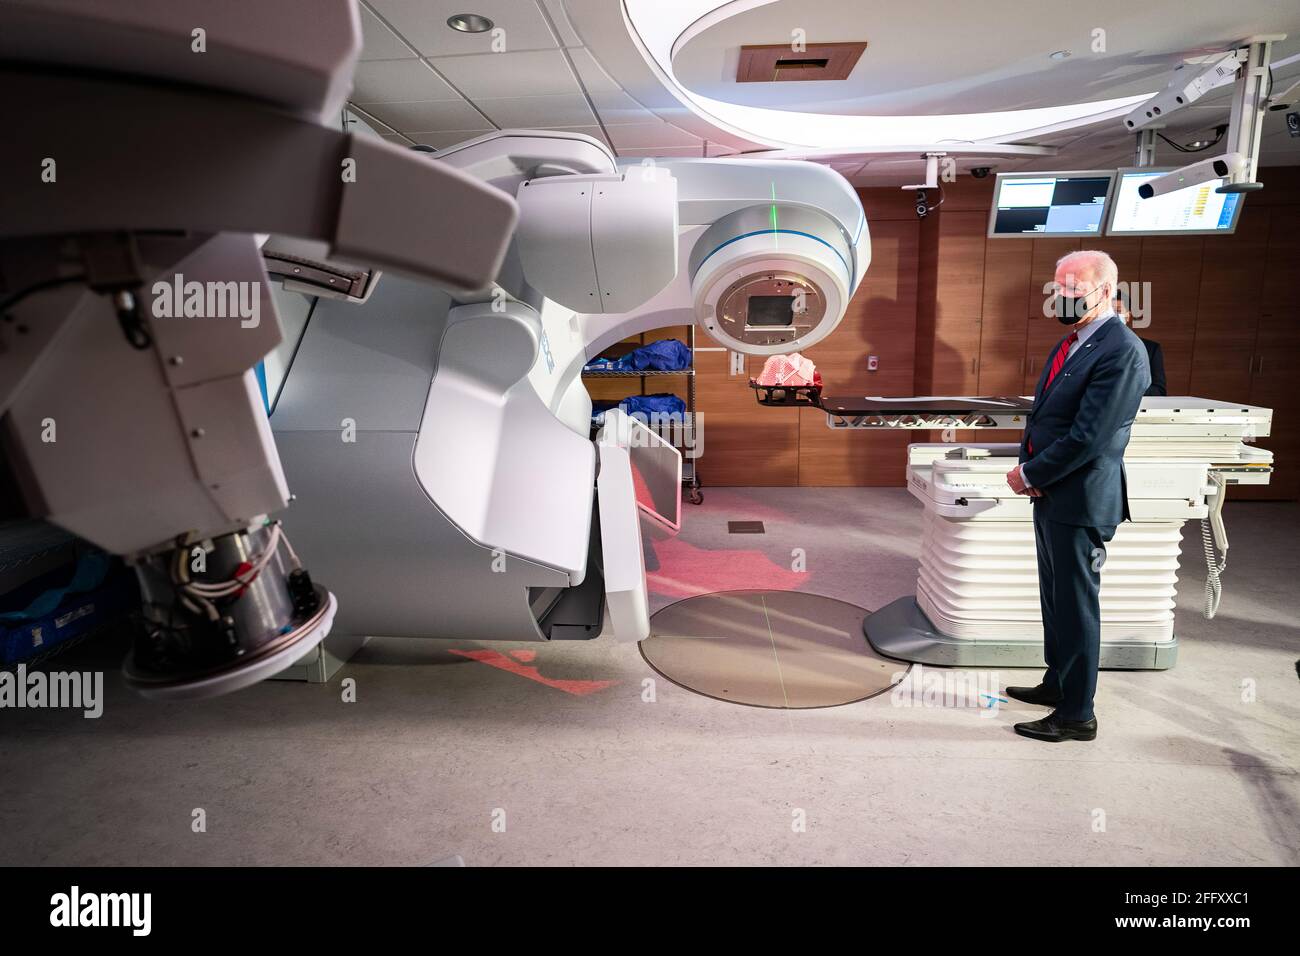 Le président Joe Biden avec un appareil d'imagerie médicale. Banque D'Images